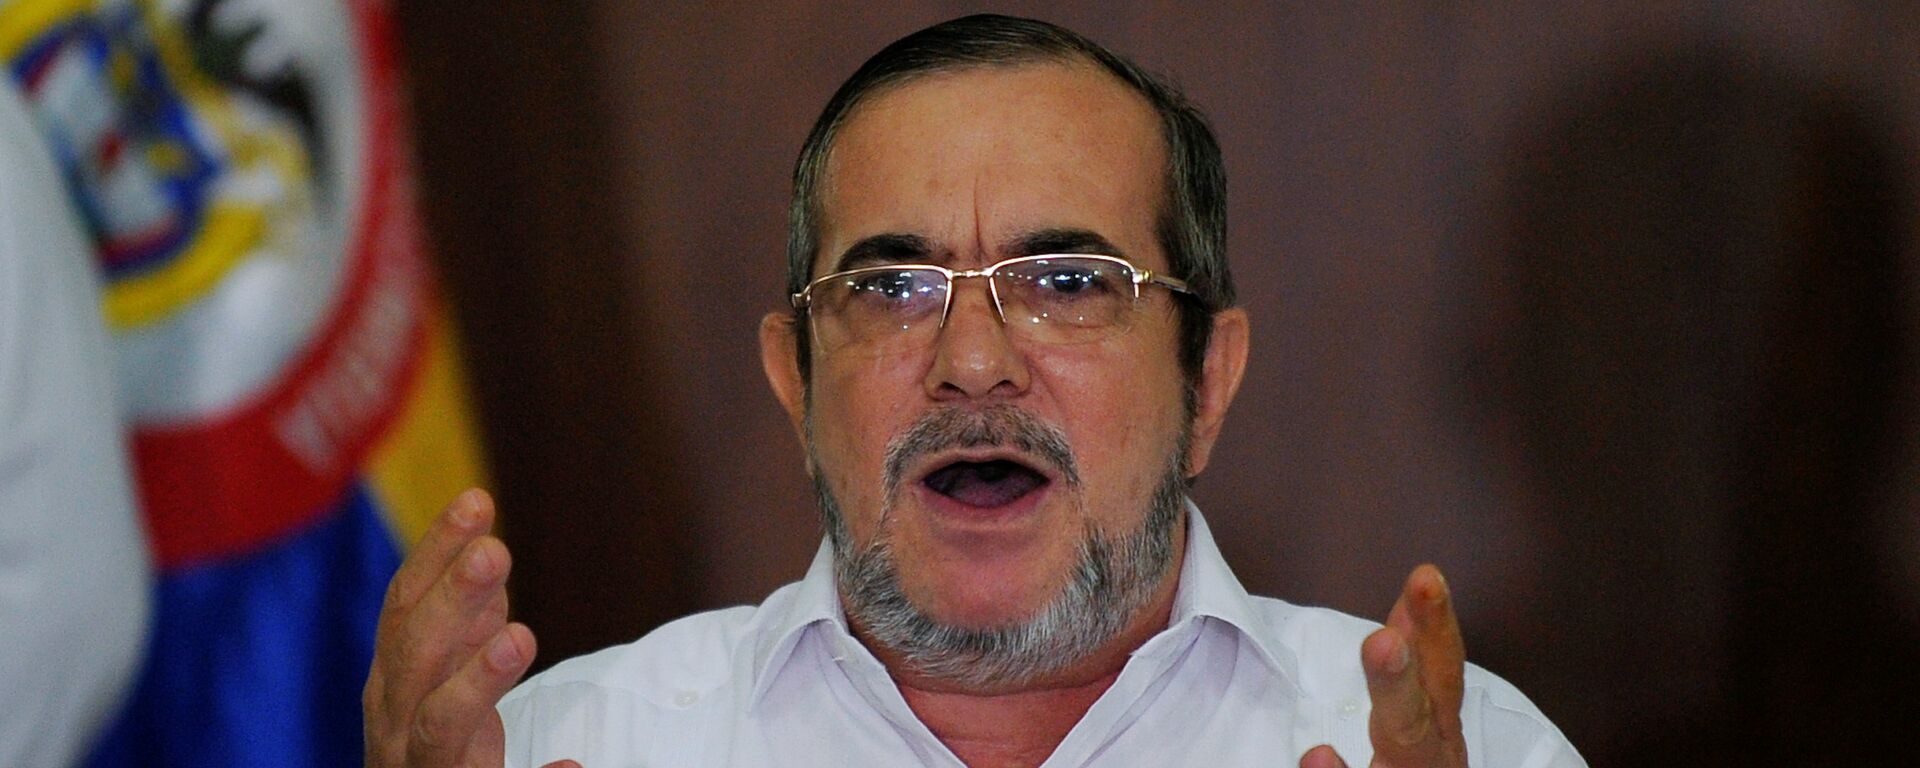 Rodrigo Londoño, alias 'Timochenko', el líder del partido colombiano FARC  - Sputnik Mundo, 1920, 24.02.2021